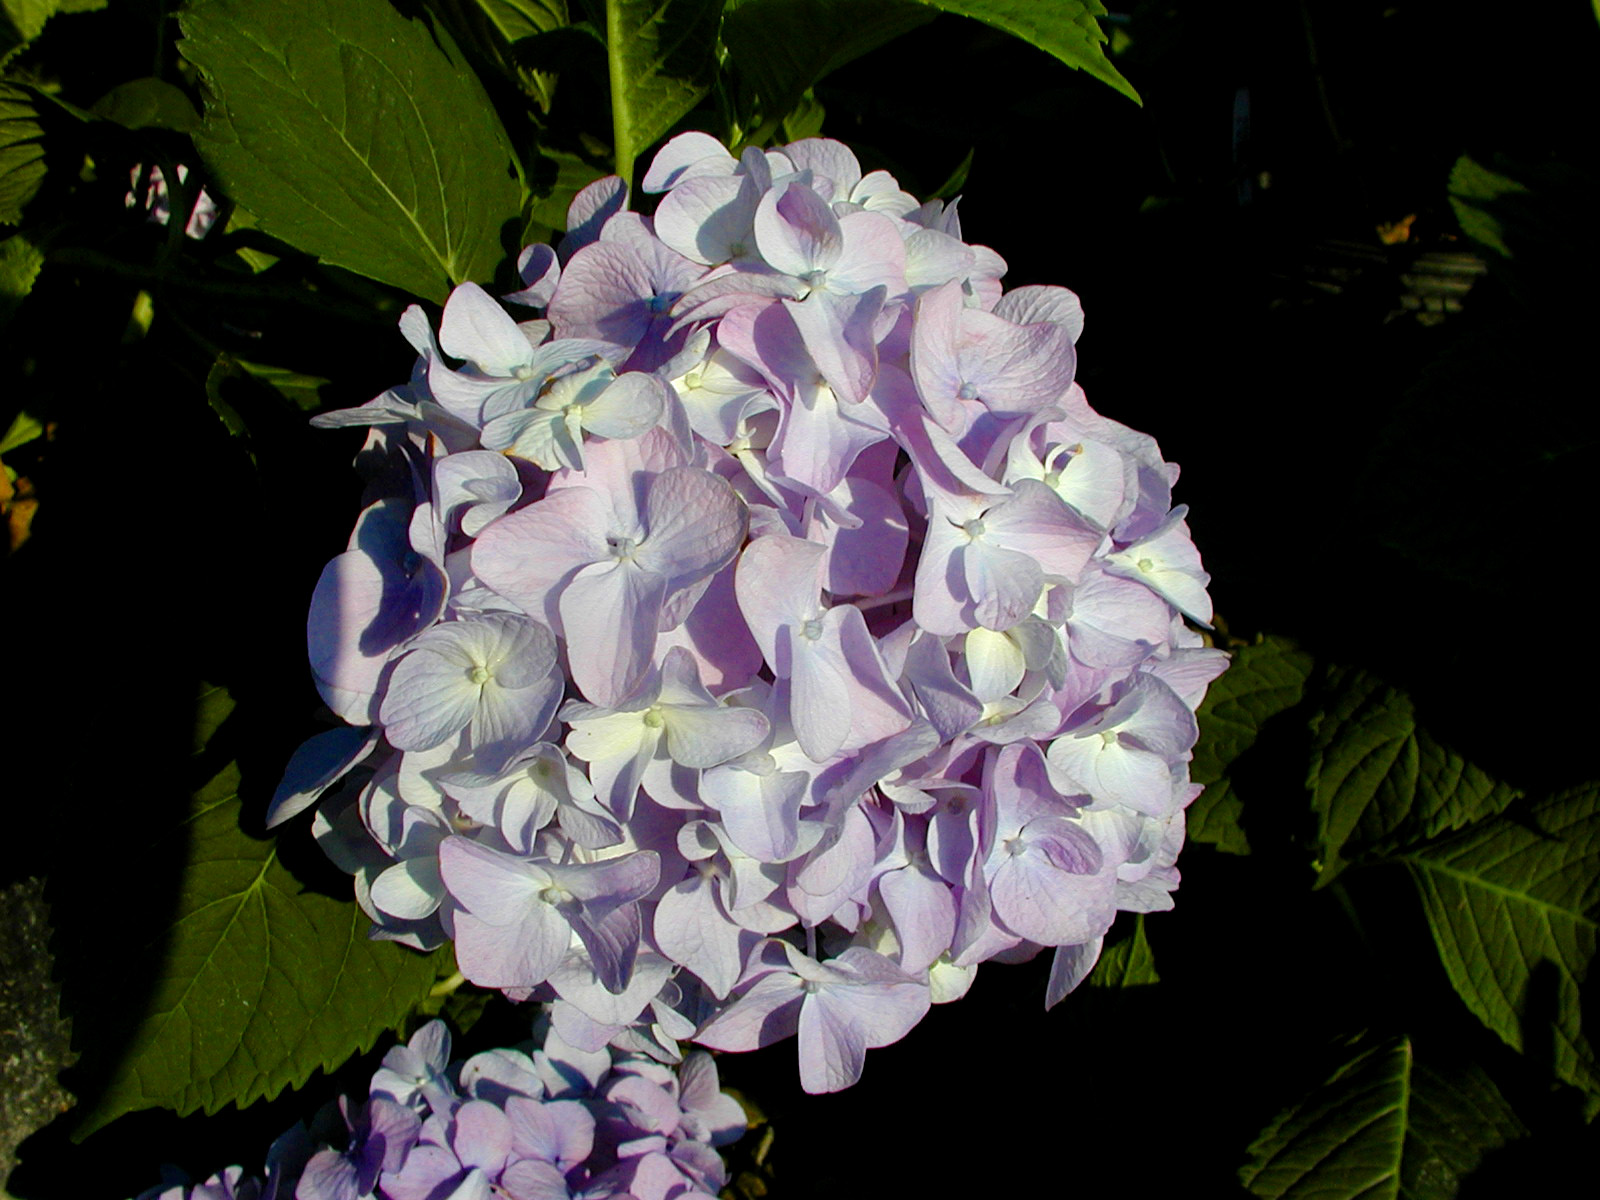 HYDRANGEA macrophylla 'All Summer Beauty' - All Summer Beauty Hydrangea